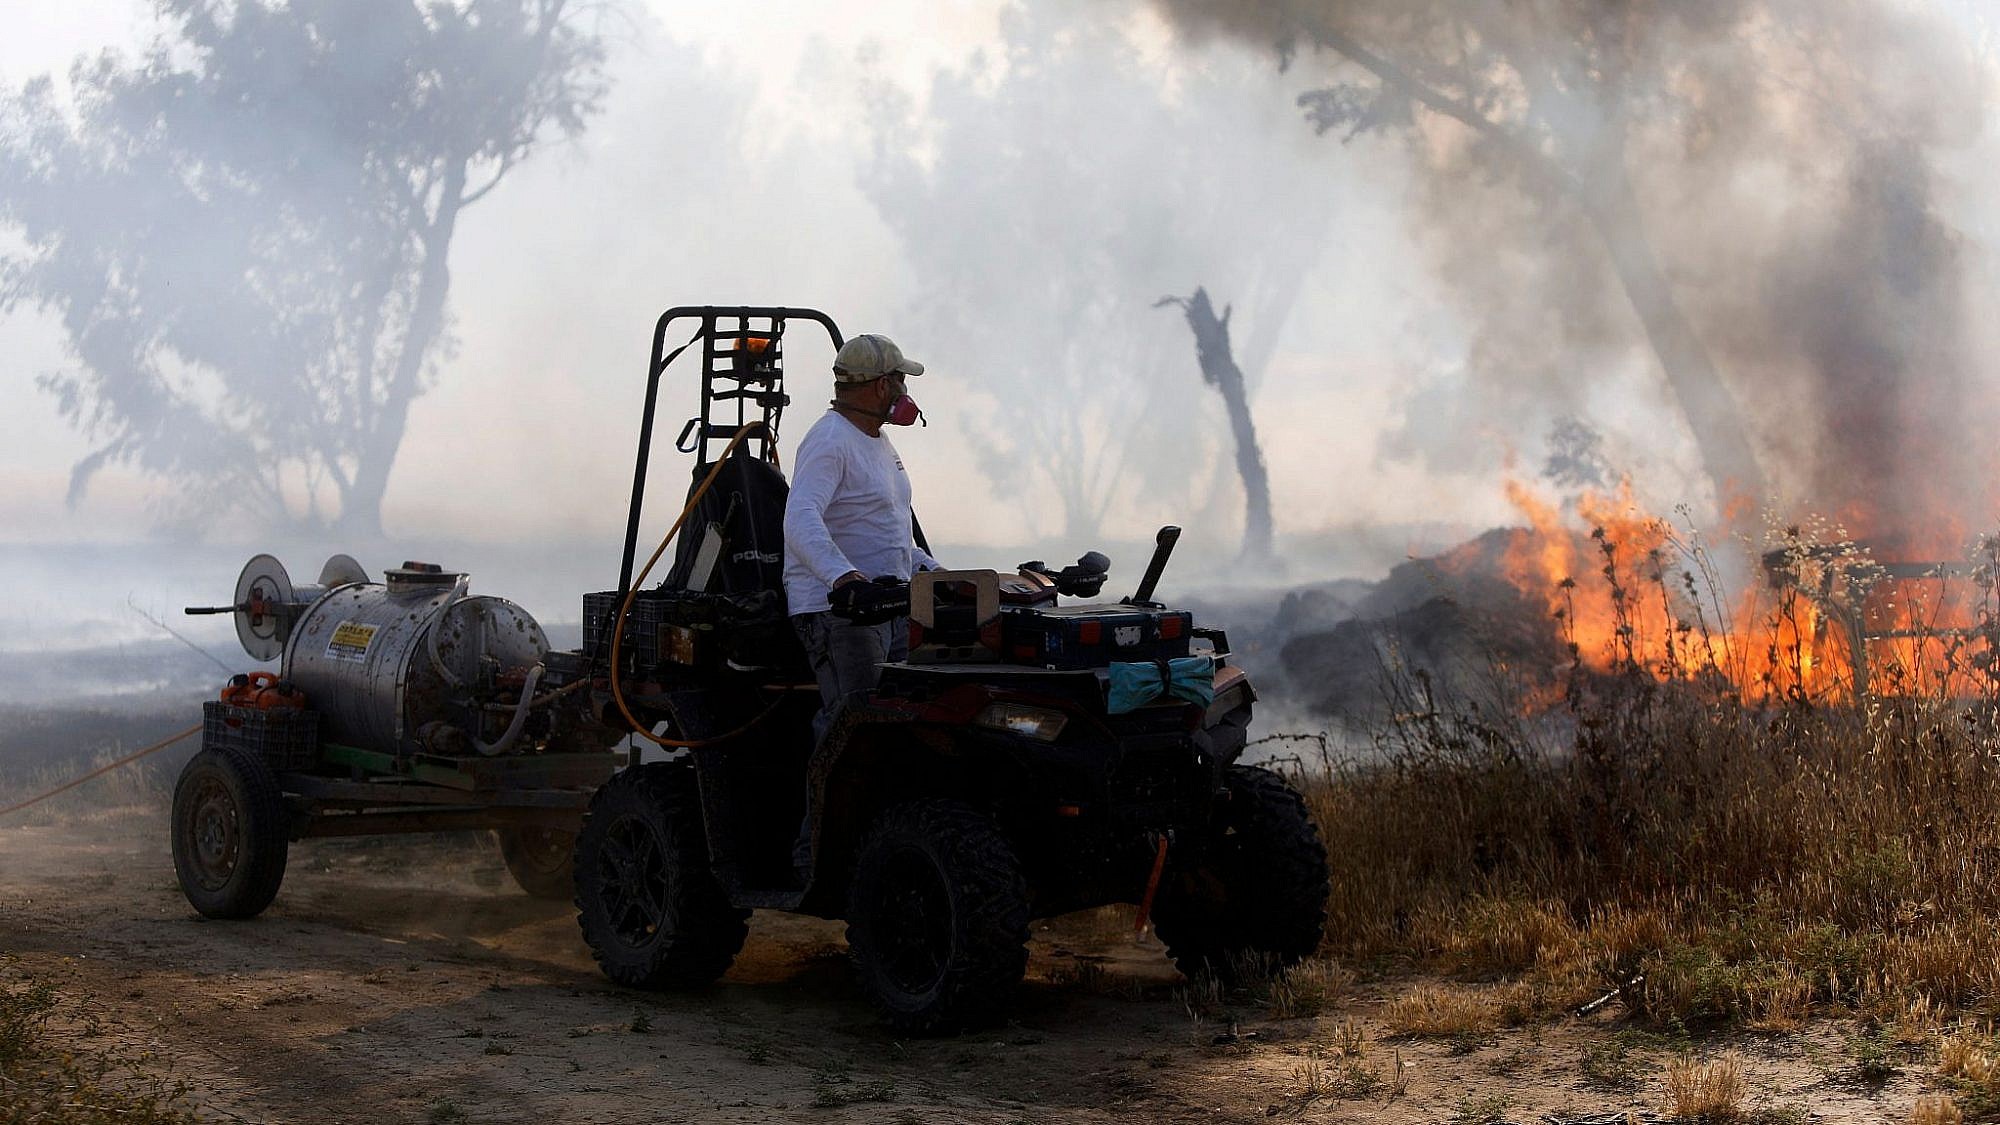 שריפה בשדה סמוך לקיבוץ בארי | צילום: מנחם כהנא/AFP/Getty Images